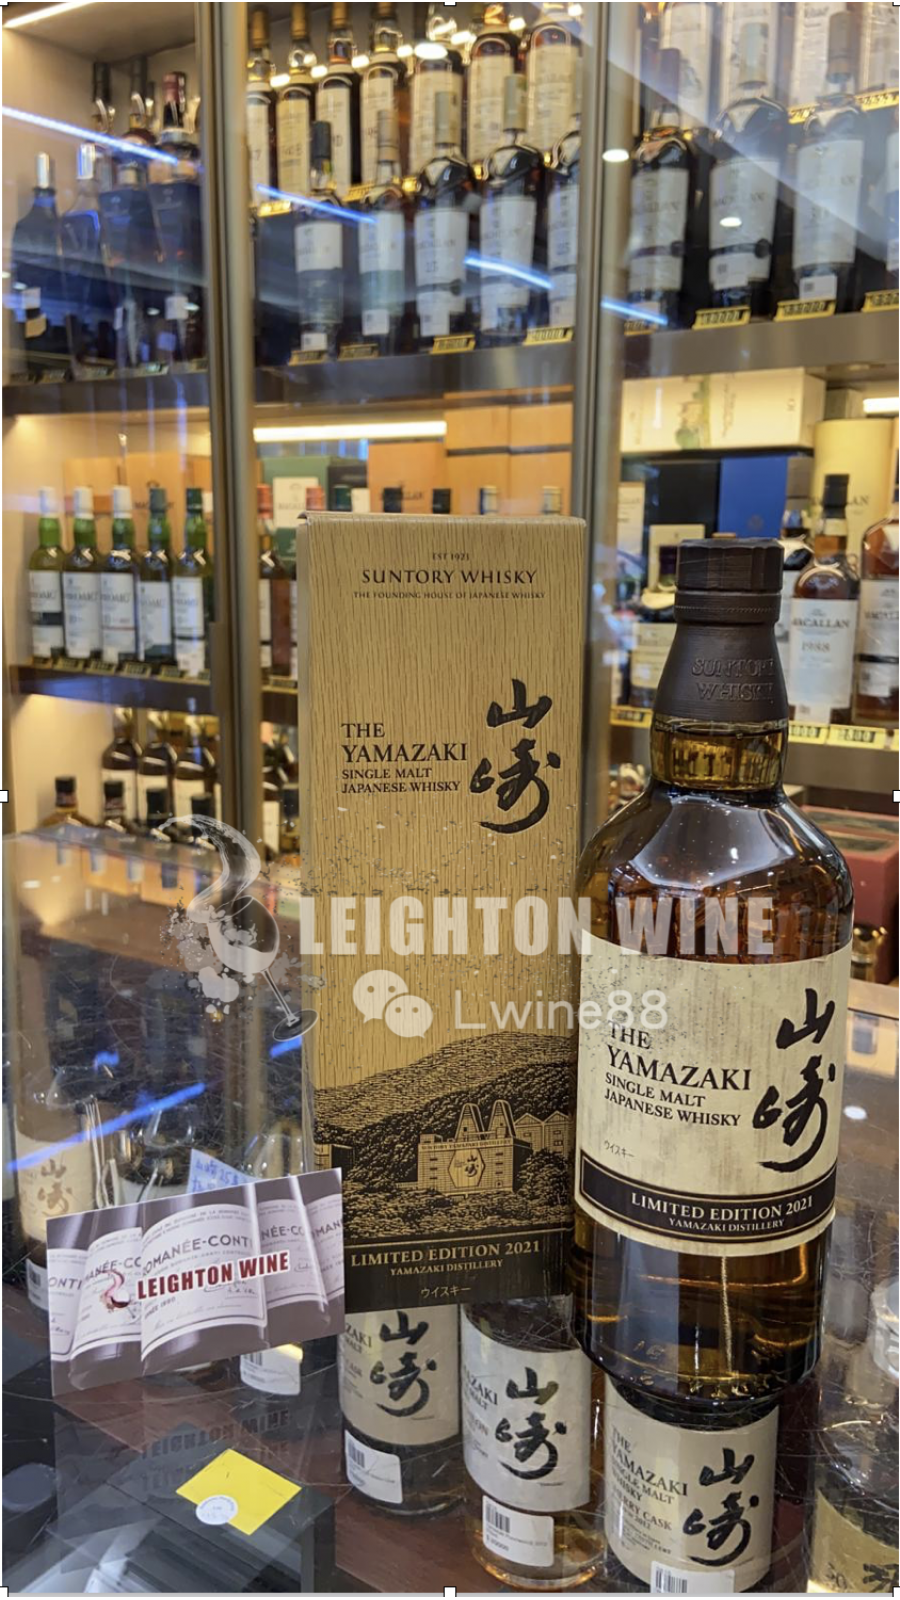 Yamazaki Single Malt Whisky Limited Edition 2021 release